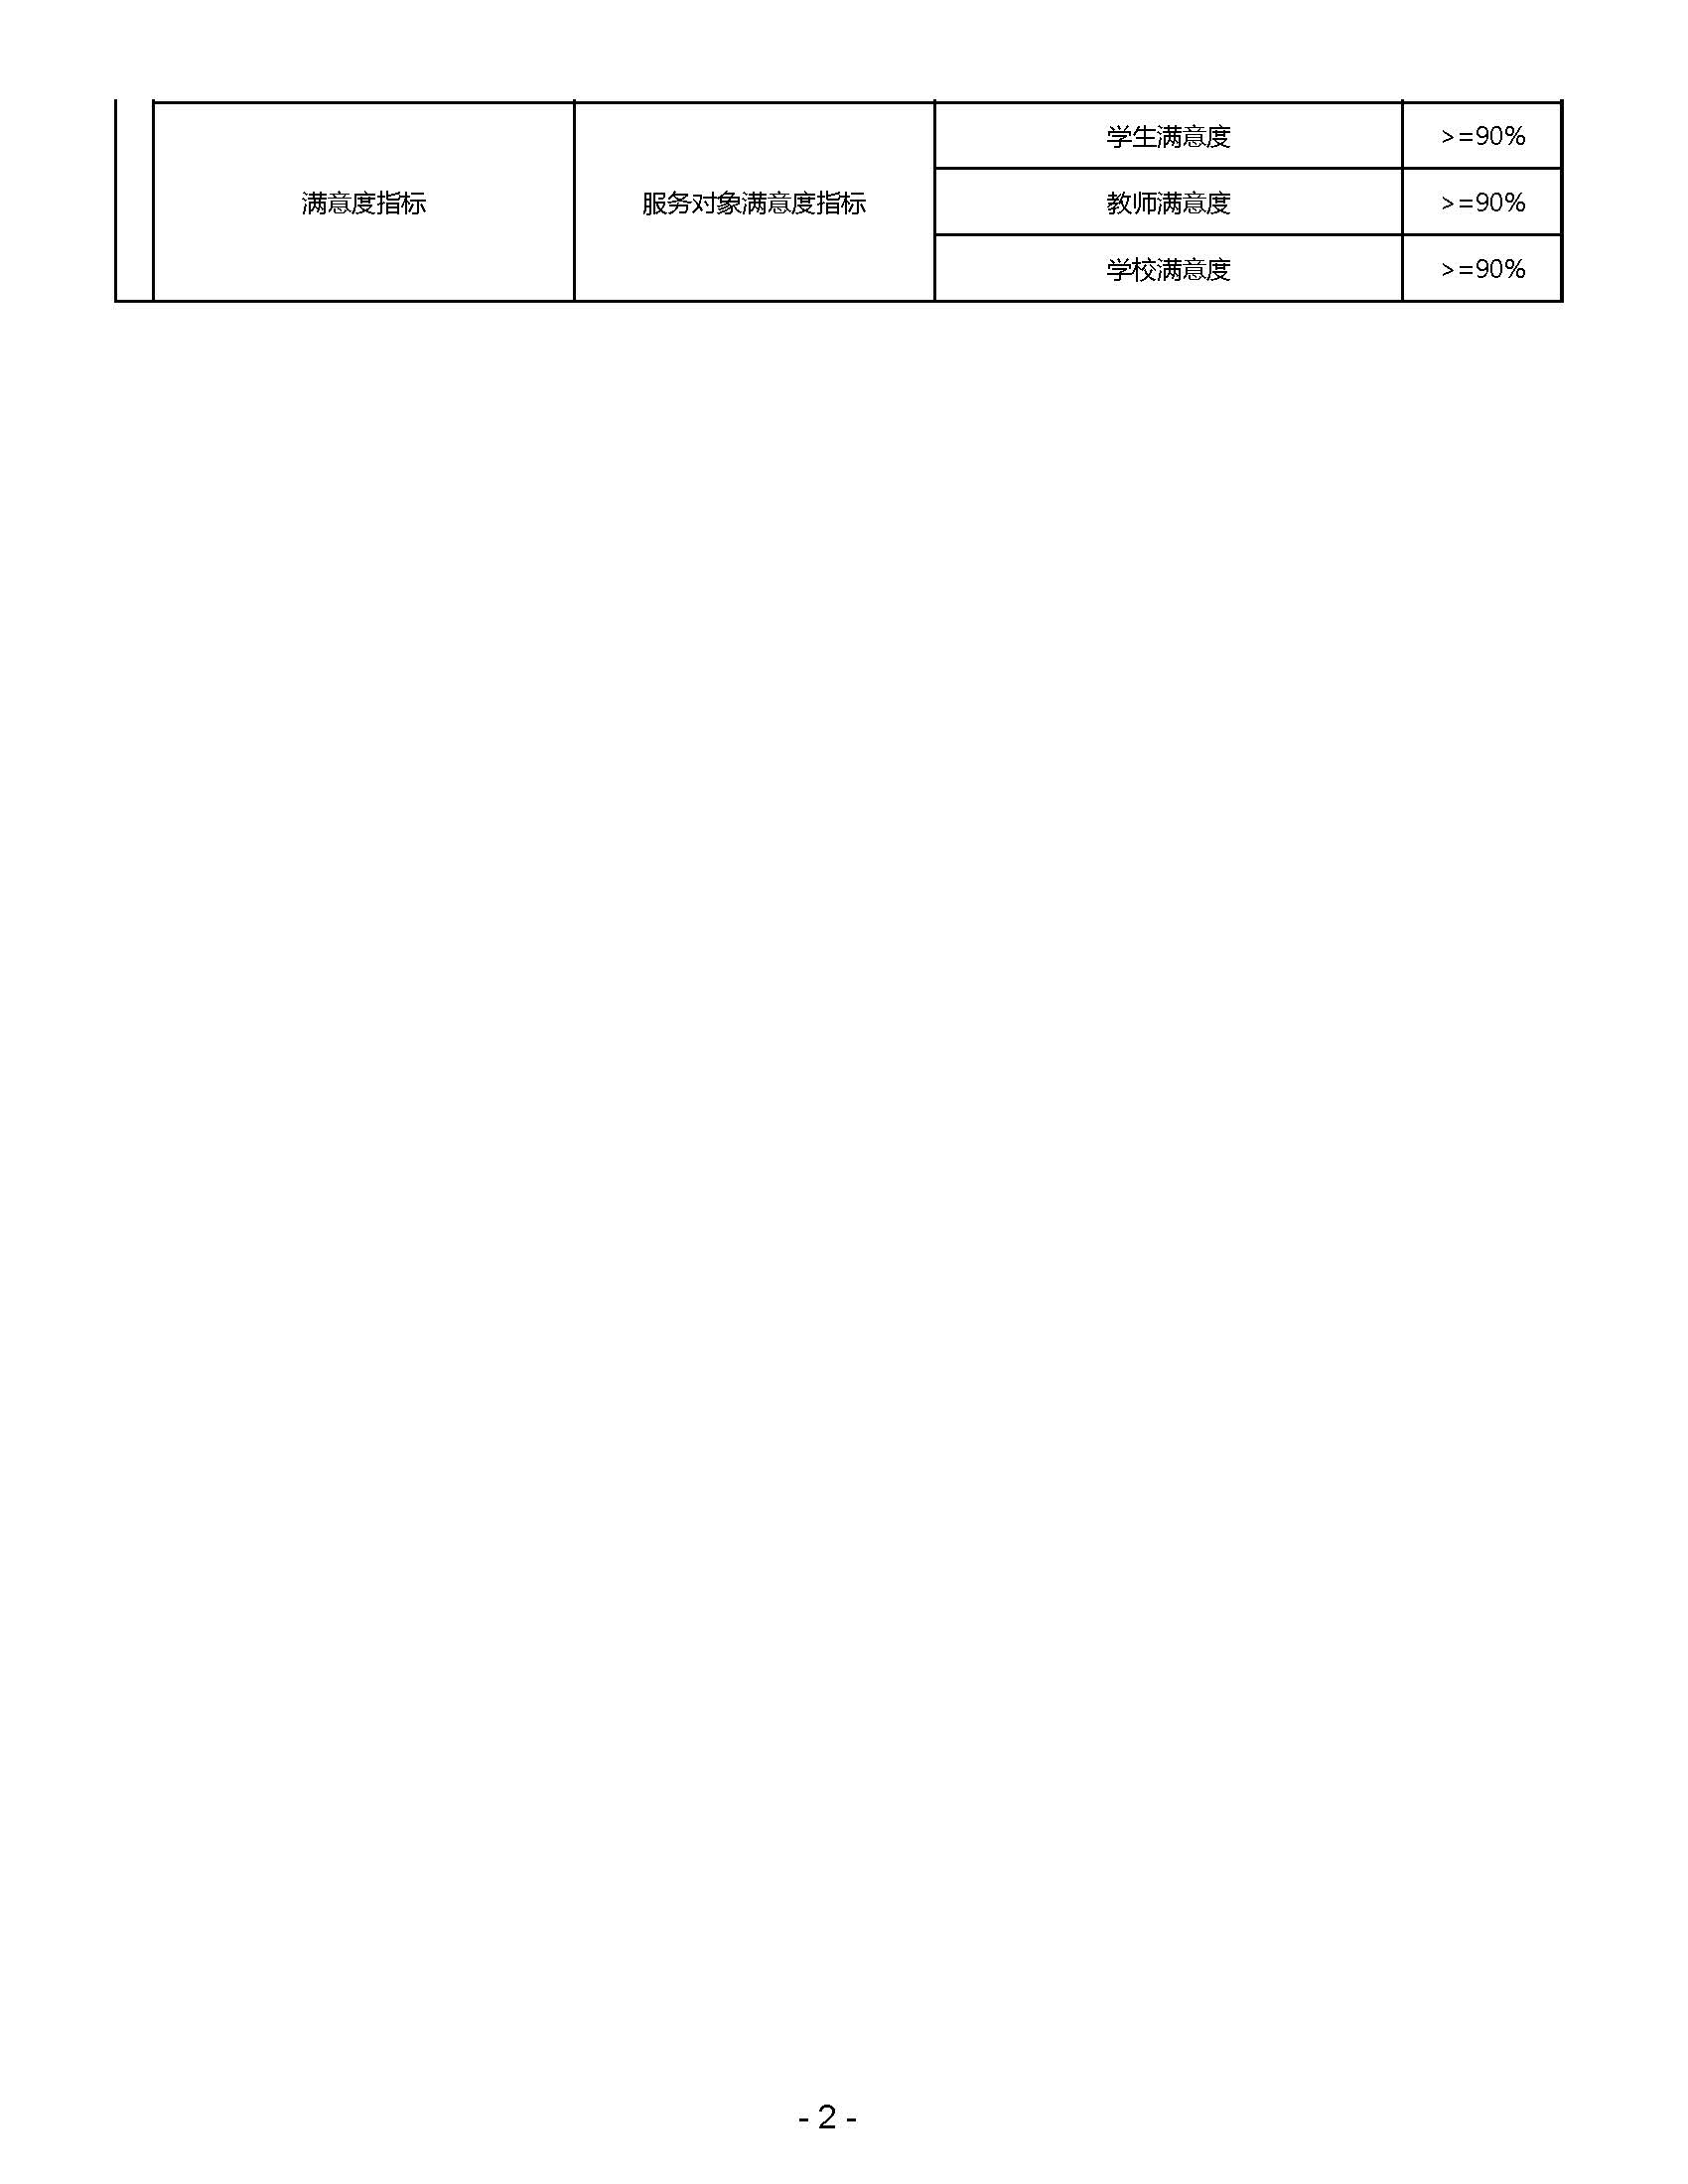 嘉定区清水路小学2023年度项目绩效目标表_页面_02.jpg